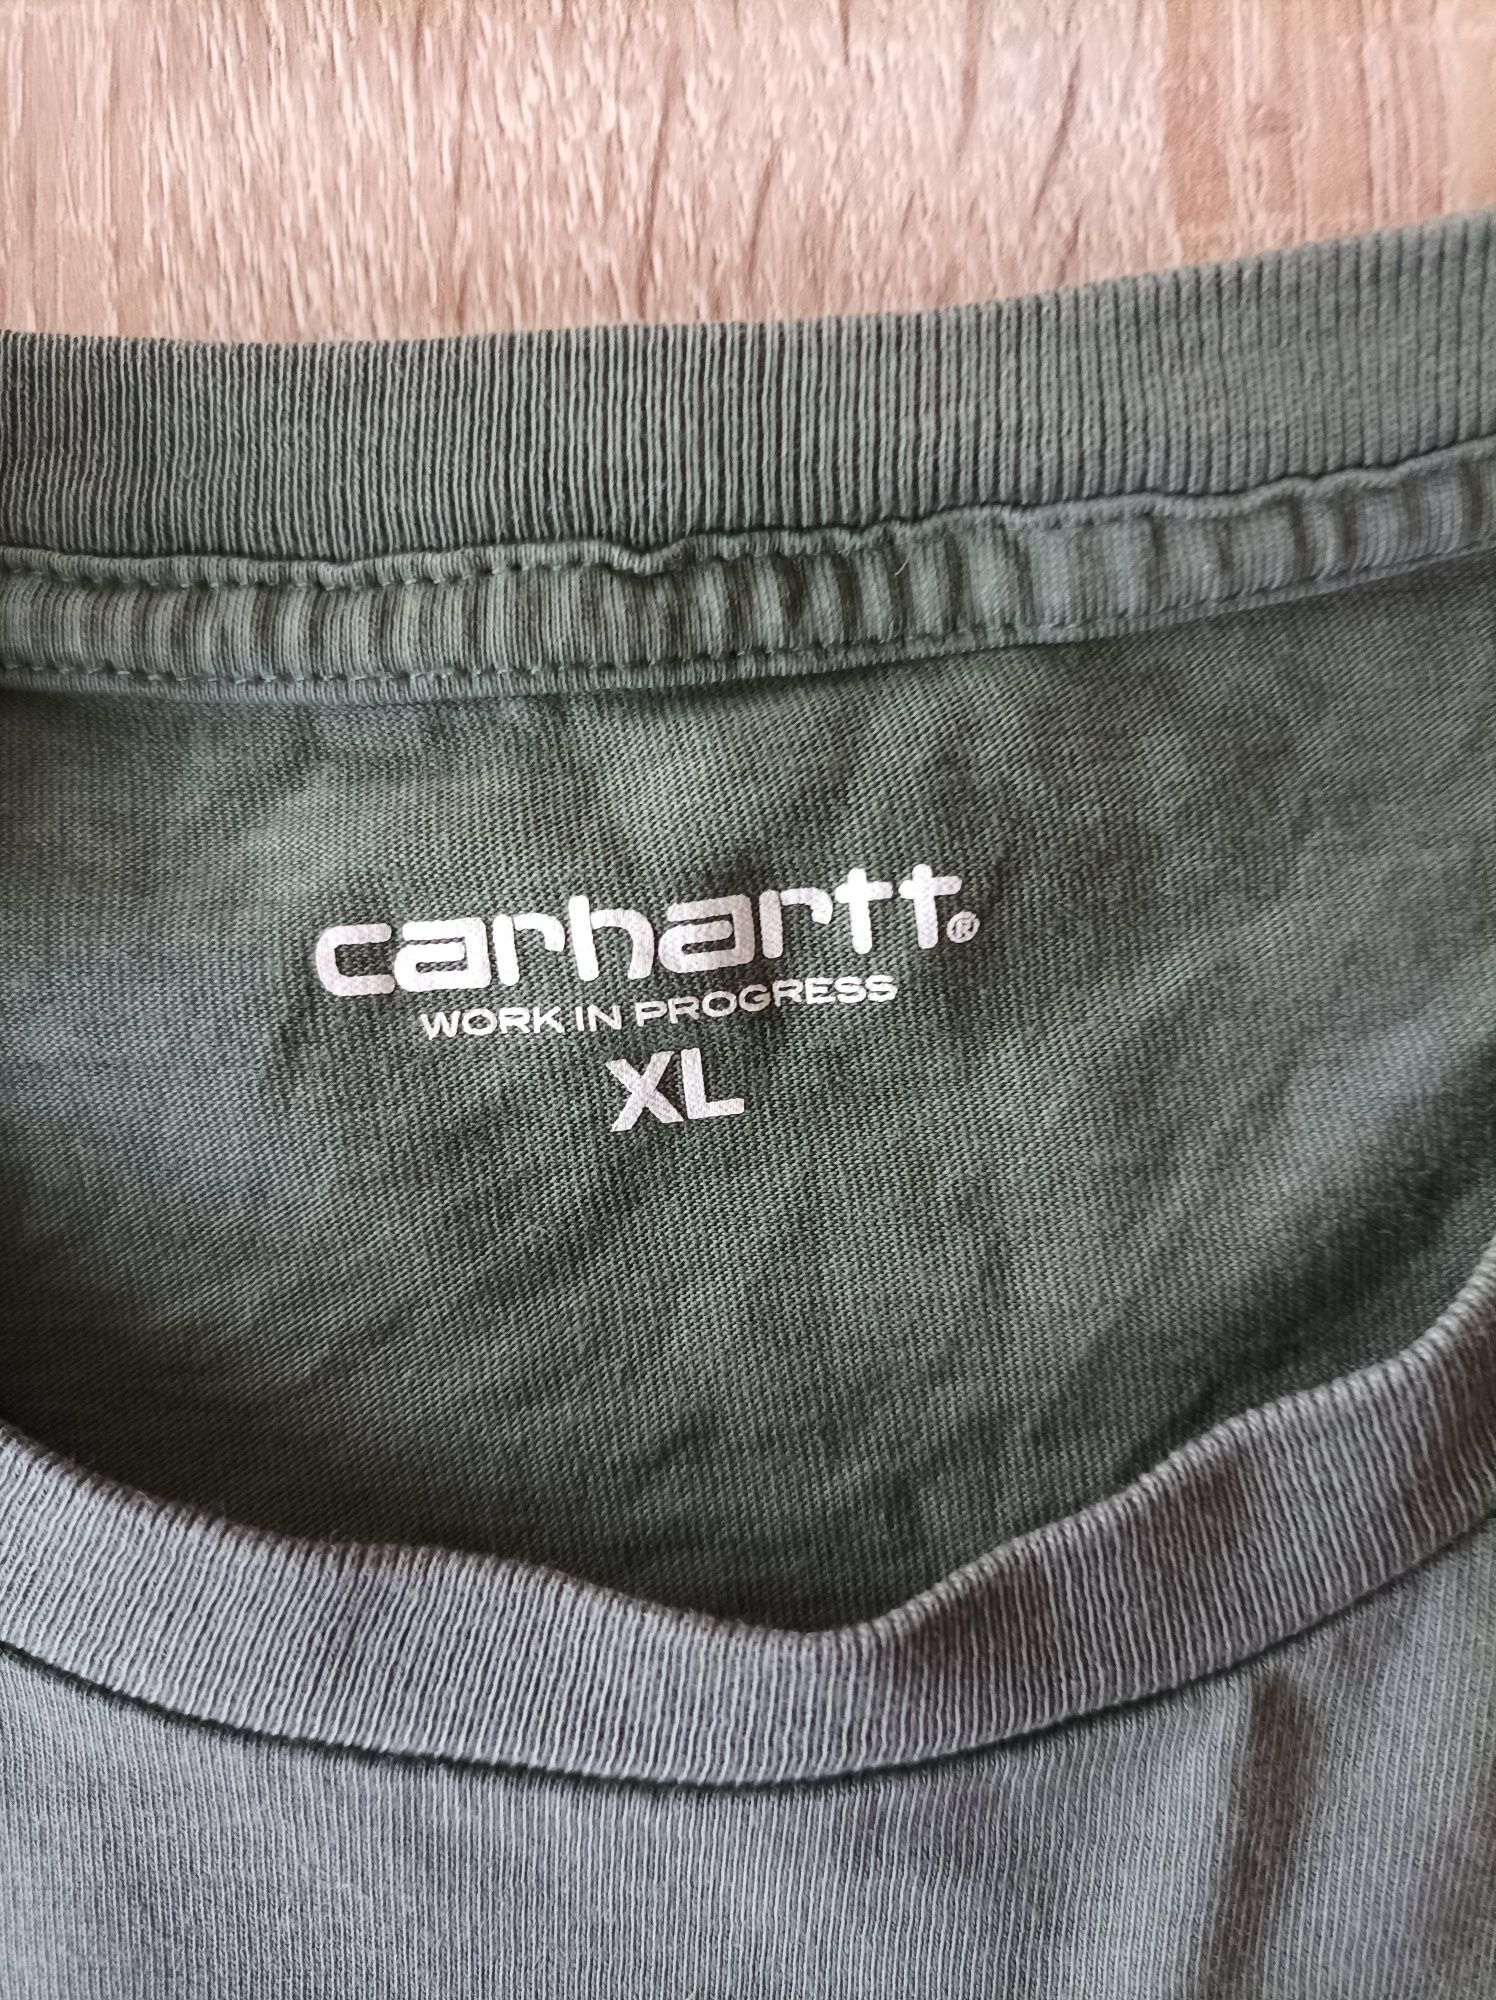 Carhartt bluzka XL